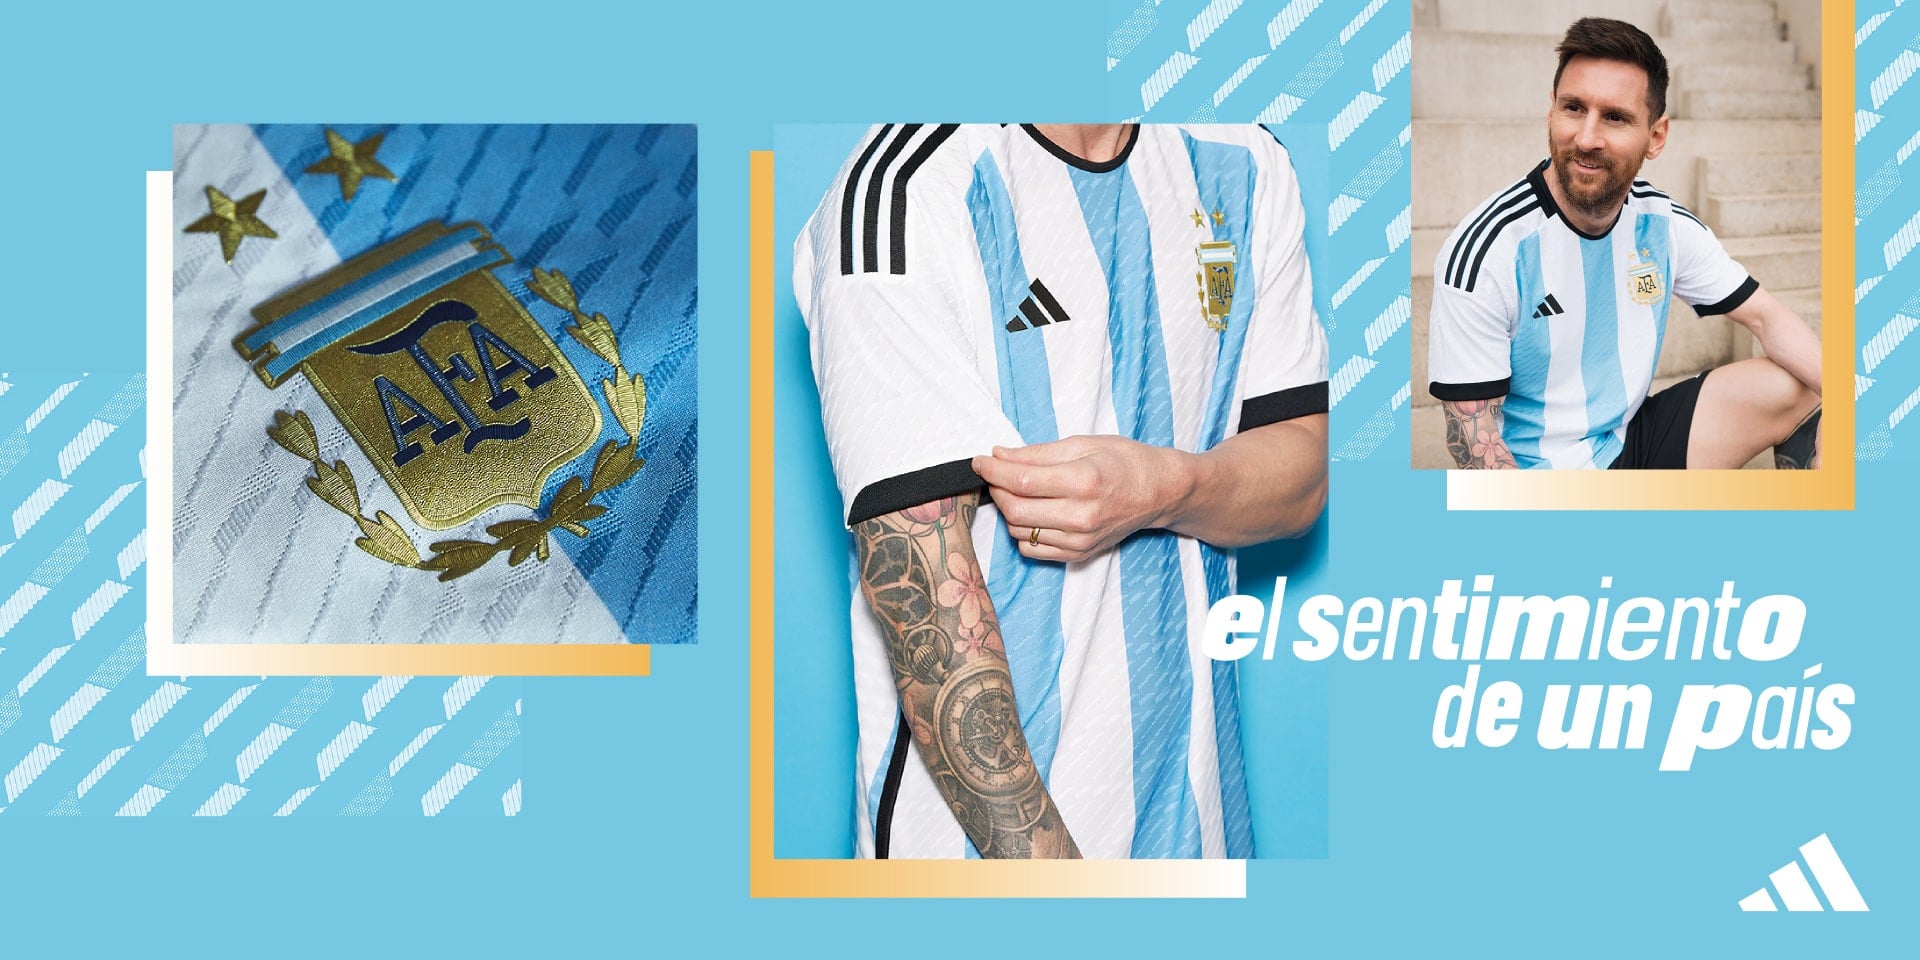 アディダス アルゼンチン代表ユニフォーム | adidas football official